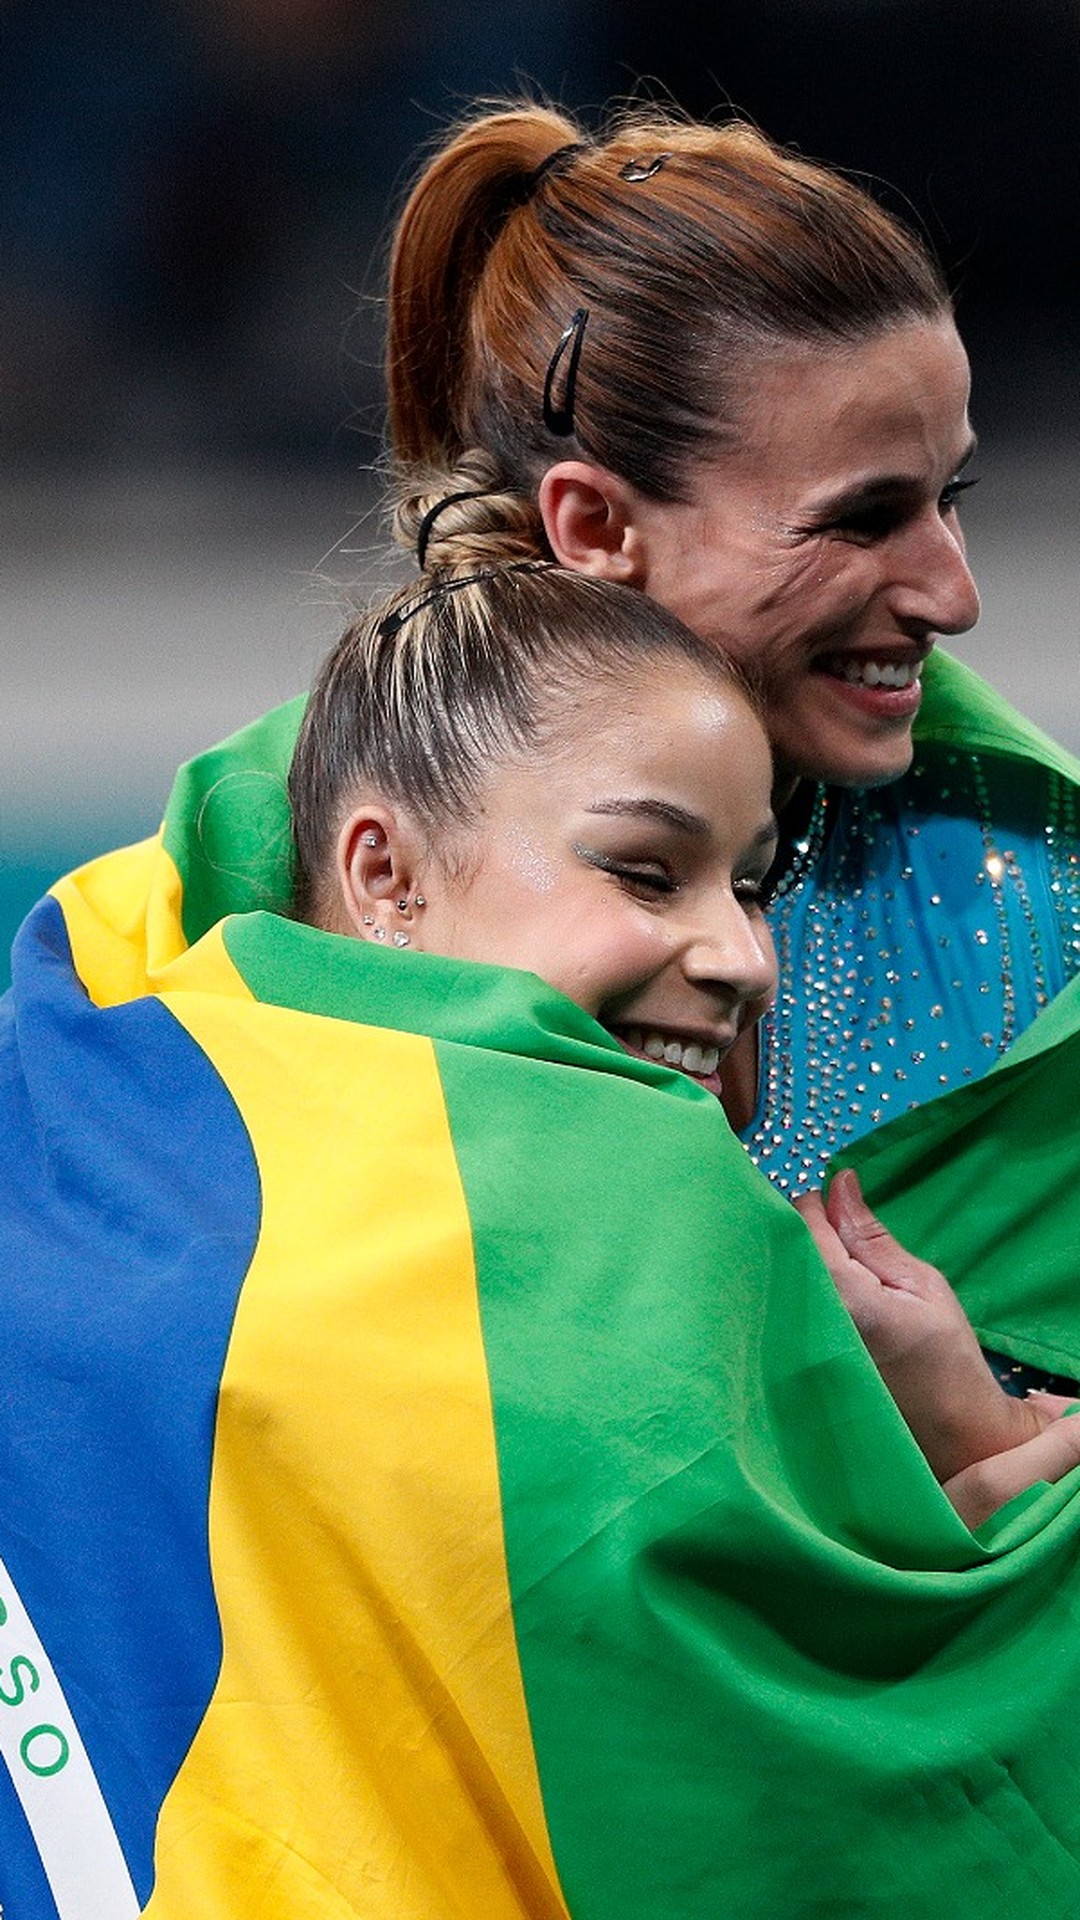 Rebeca Andrade supera Simone Biles e conquista o ouro no salto no Mundial  de Ginástica Artística - Jogada - Diário do Nordeste